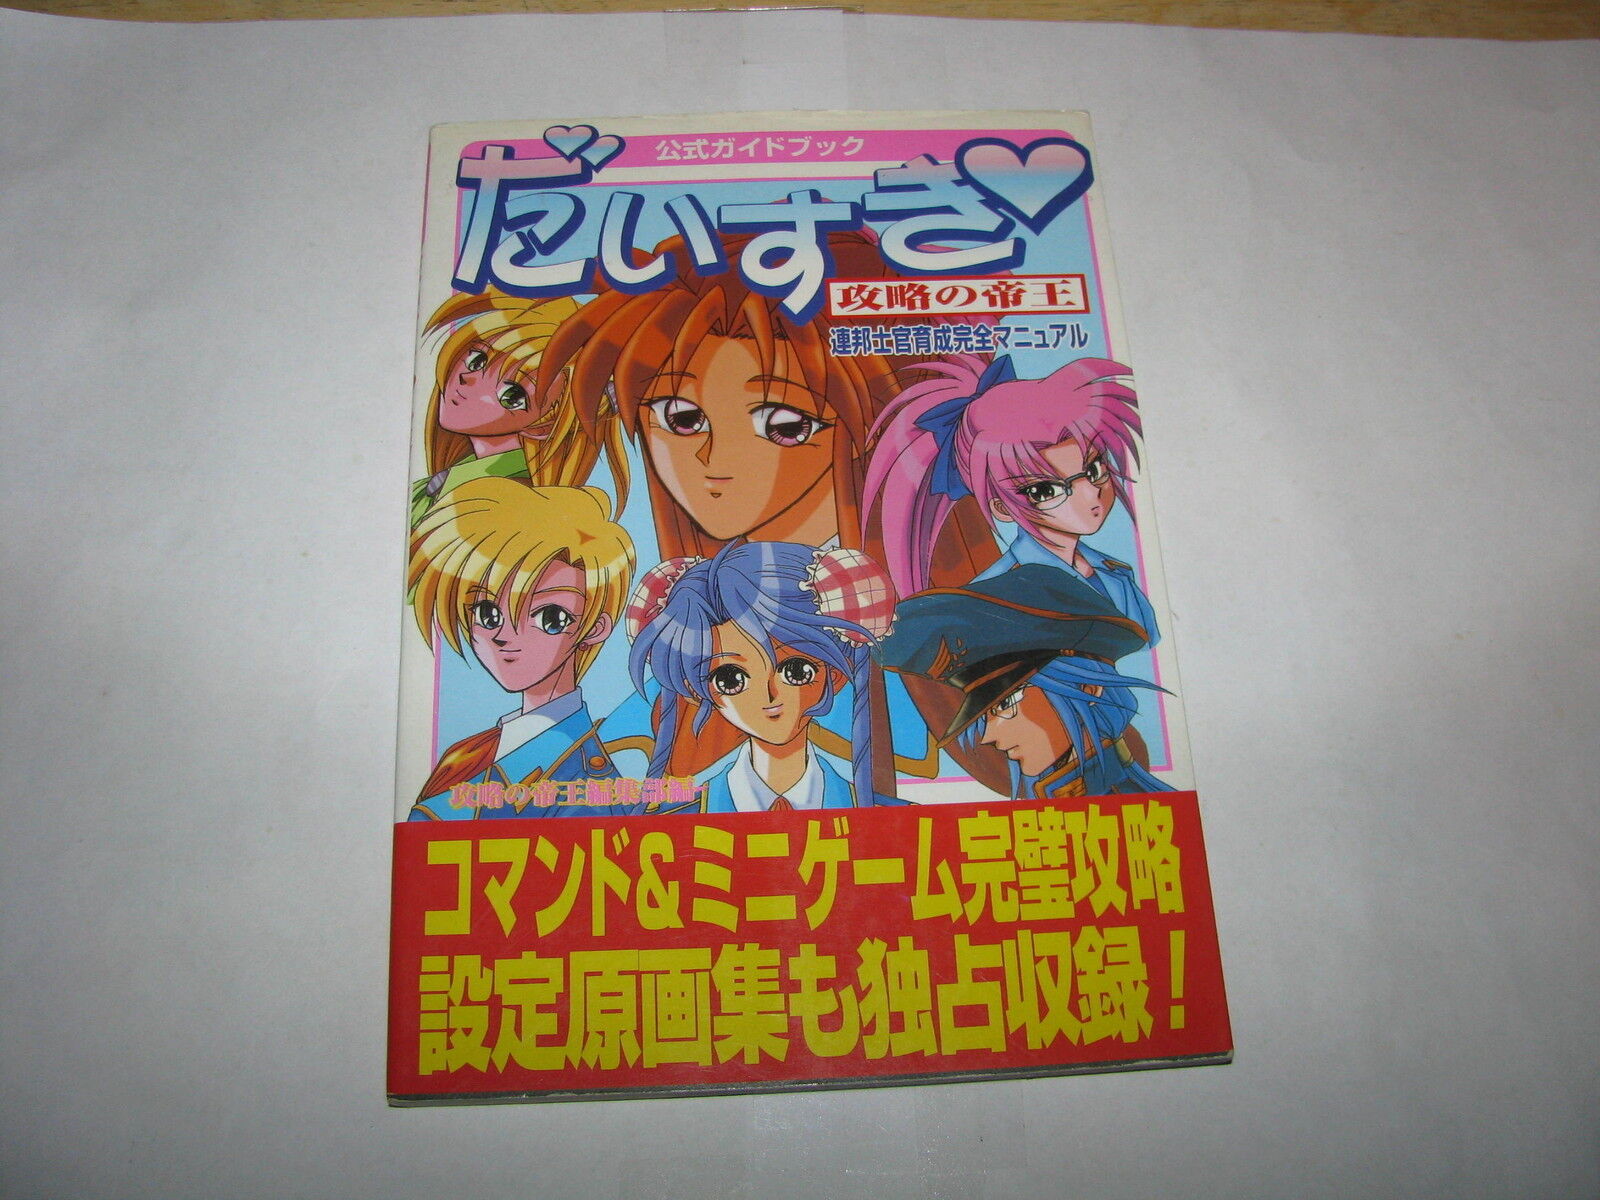 Daisuki Sega Saturn Official Game Guide Book Japan import